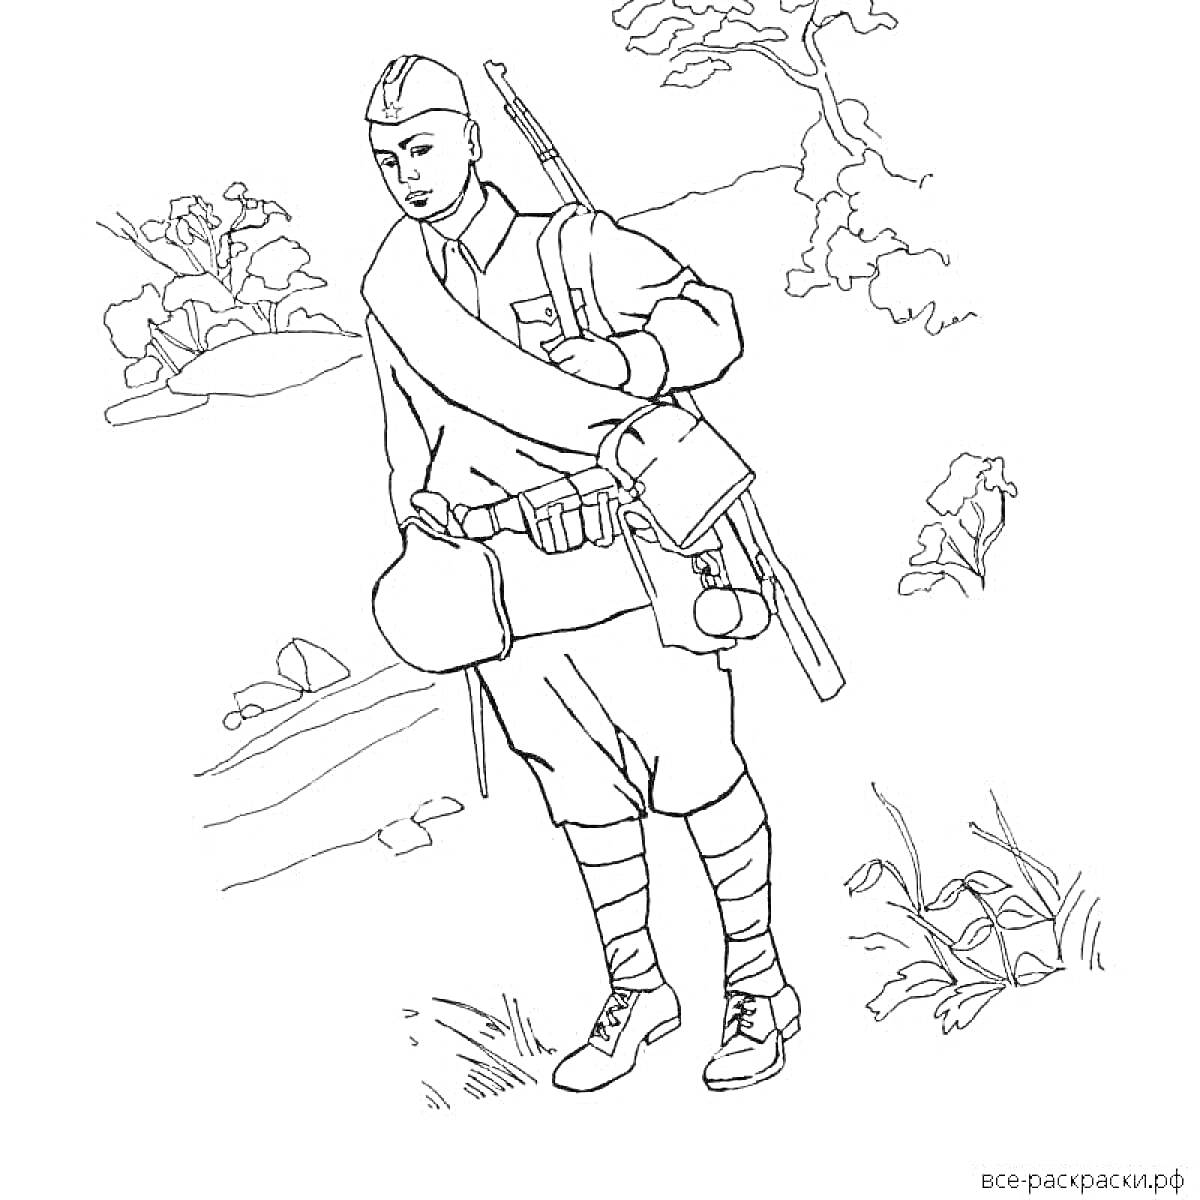 Раскраска Солдат с письмом в руке, штык и винтовка за спиной, бедруля на поясе, деревья и кустарники на фоне